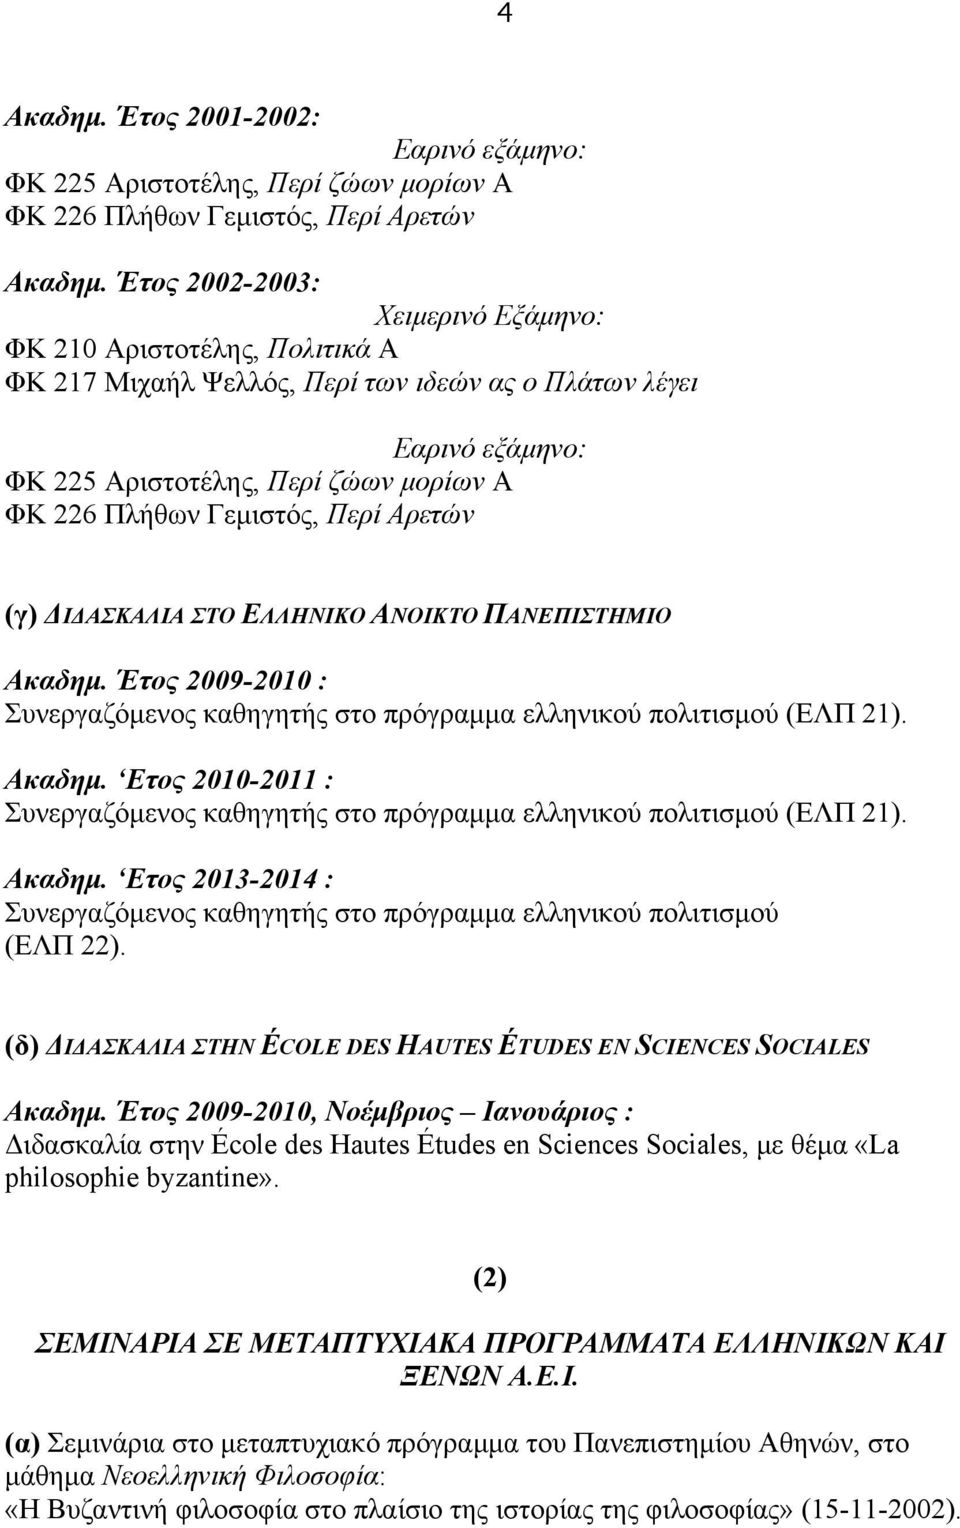 Περί Αρετών (γ) ΔΙΔΑΣΚΑΛΙΑ ΣΤΟ ΕΛΛΗΝΙΚΟ ΑΝΟΙΚΤΟ ΠΑΝΕΠΙΣΤΗΜΙΟ Ακαδηµ. Έτος 2009-2010 : Συνεργαζόµενος καθηγητής στο πρόγραµµα ελληνικού πολιτισµού (ΕΛΠ 21). Ακαδηµ. Ετος 2010-2011 : Συνεργαζόµενος καθηγητής στο πρόγραµµα ελληνικού πολιτισµού (ΕΛΠ 21).